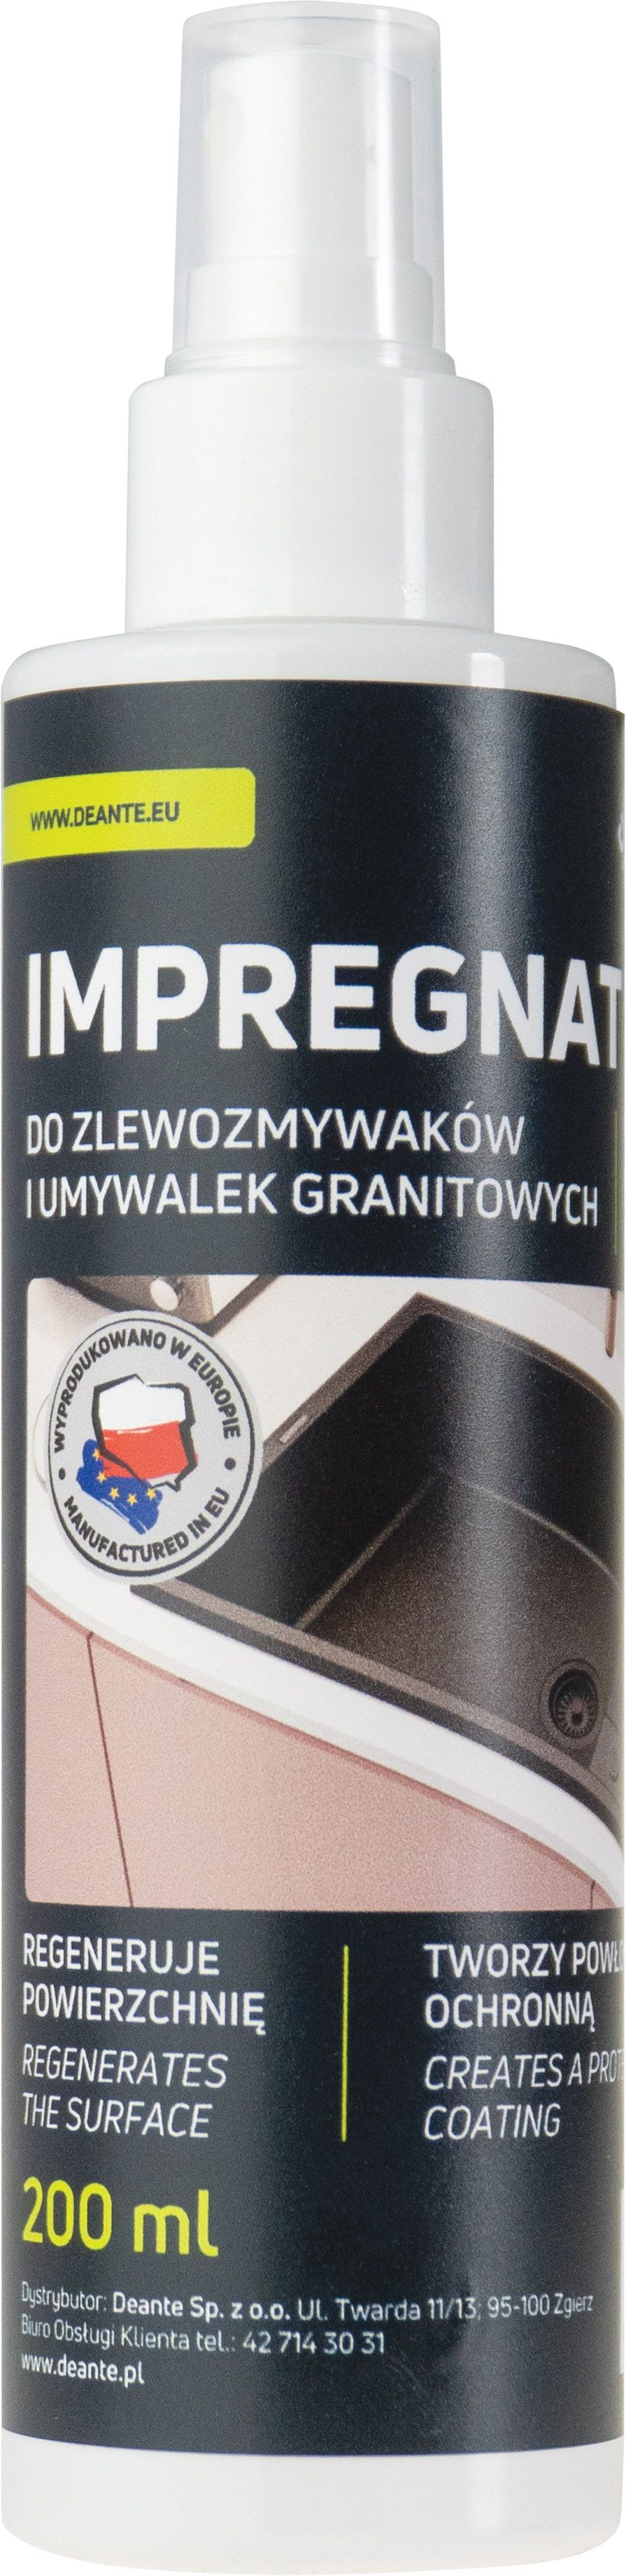 Protector, Para productos de granito - 200 ml - ZZZ_020I - Główne zdjęcie produktowe